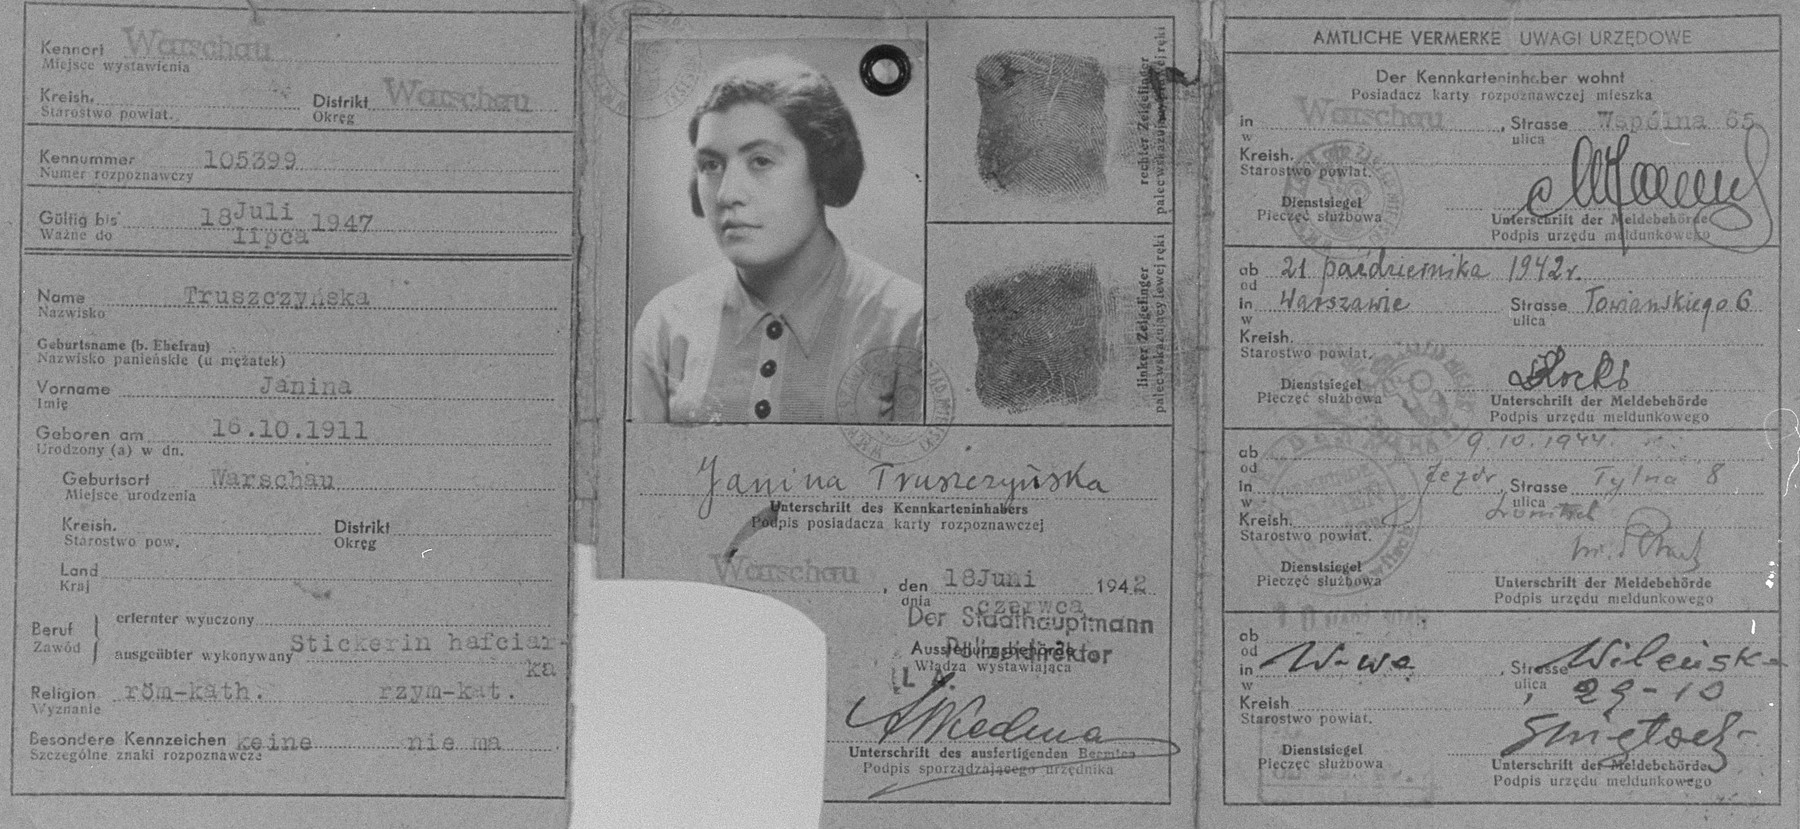 Identidad falsa para Izabela Bieżuńska, miembro de Żegota